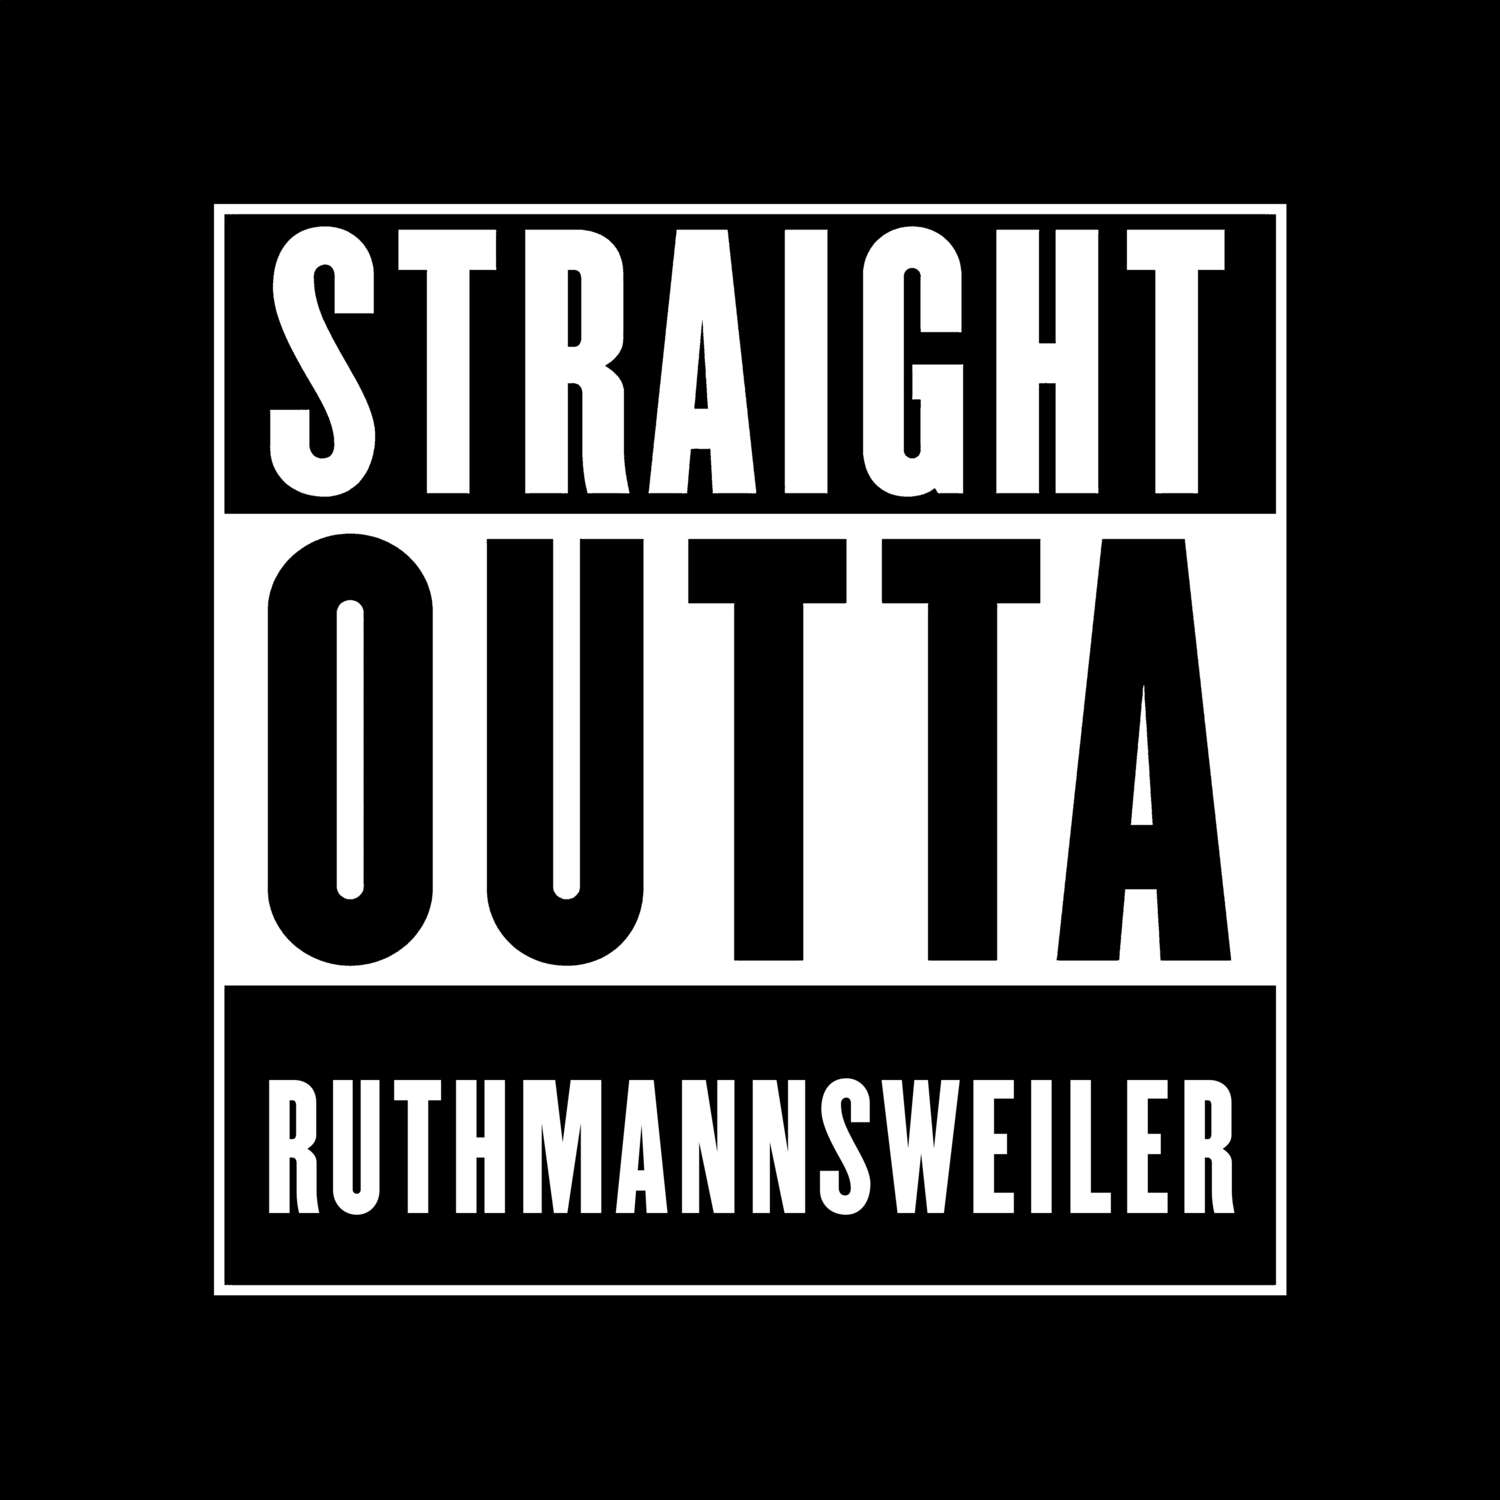 Ruthmannsweiler T-Shirt »Straight Outta«